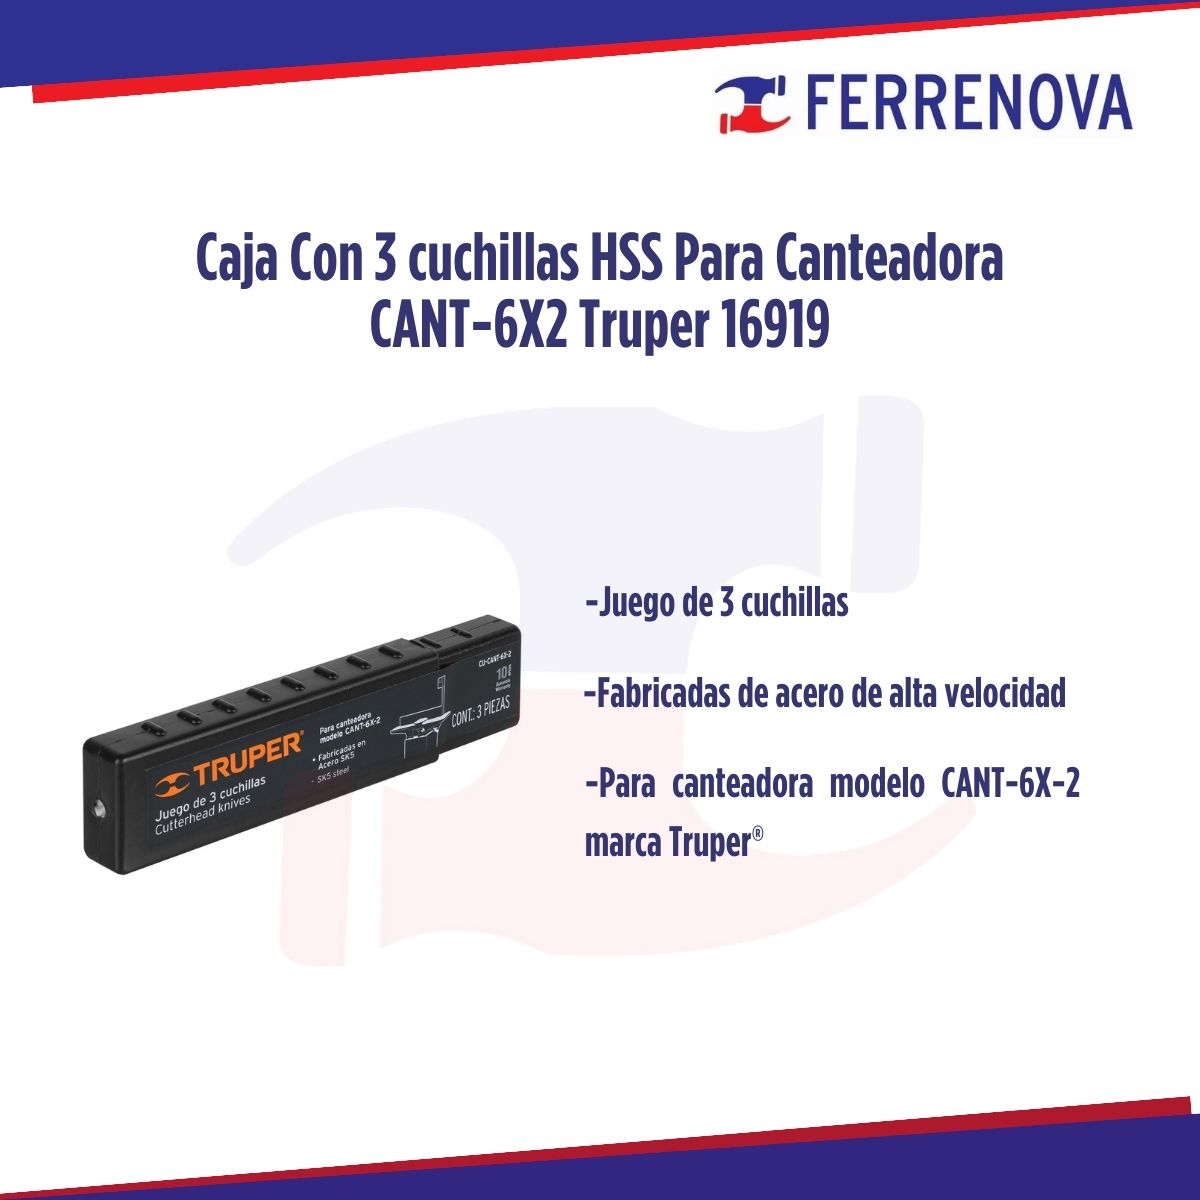 Caja Con 3 Cuchillas HSS Para Canteadora CANT-6X2 Truper 16919